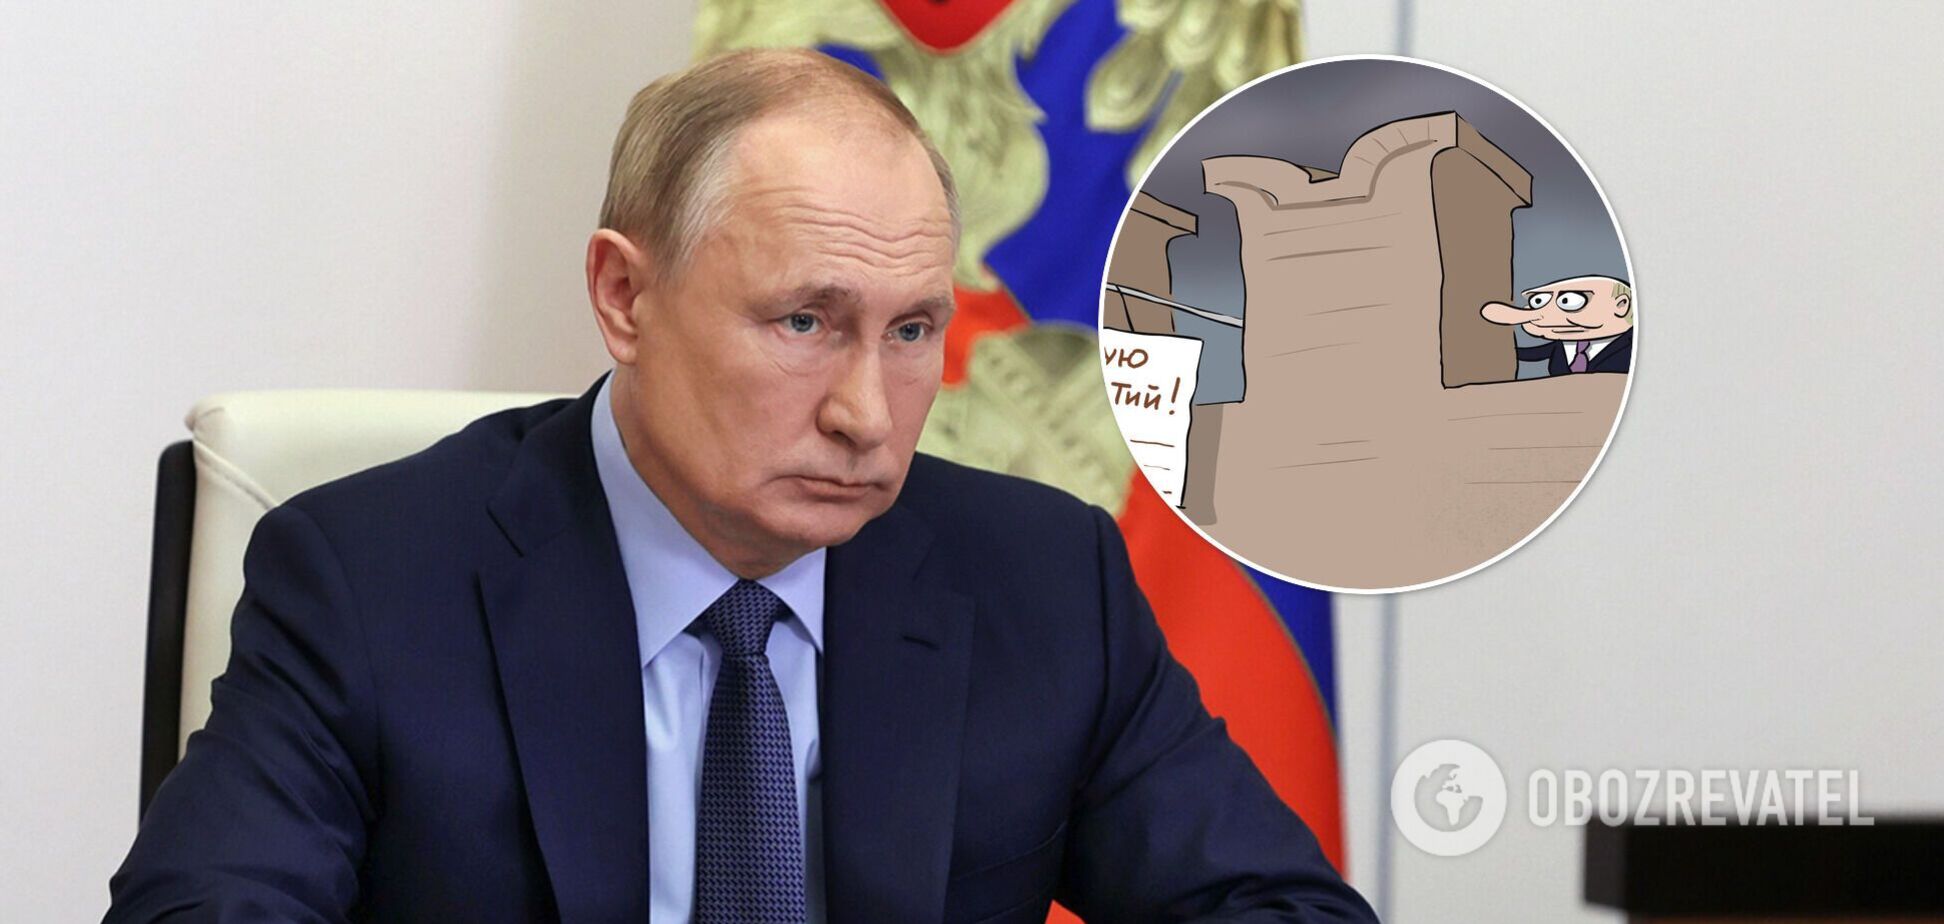 Требования России по 'гарантиям безопасности' высмеяли меткой карикатурой с Путиным